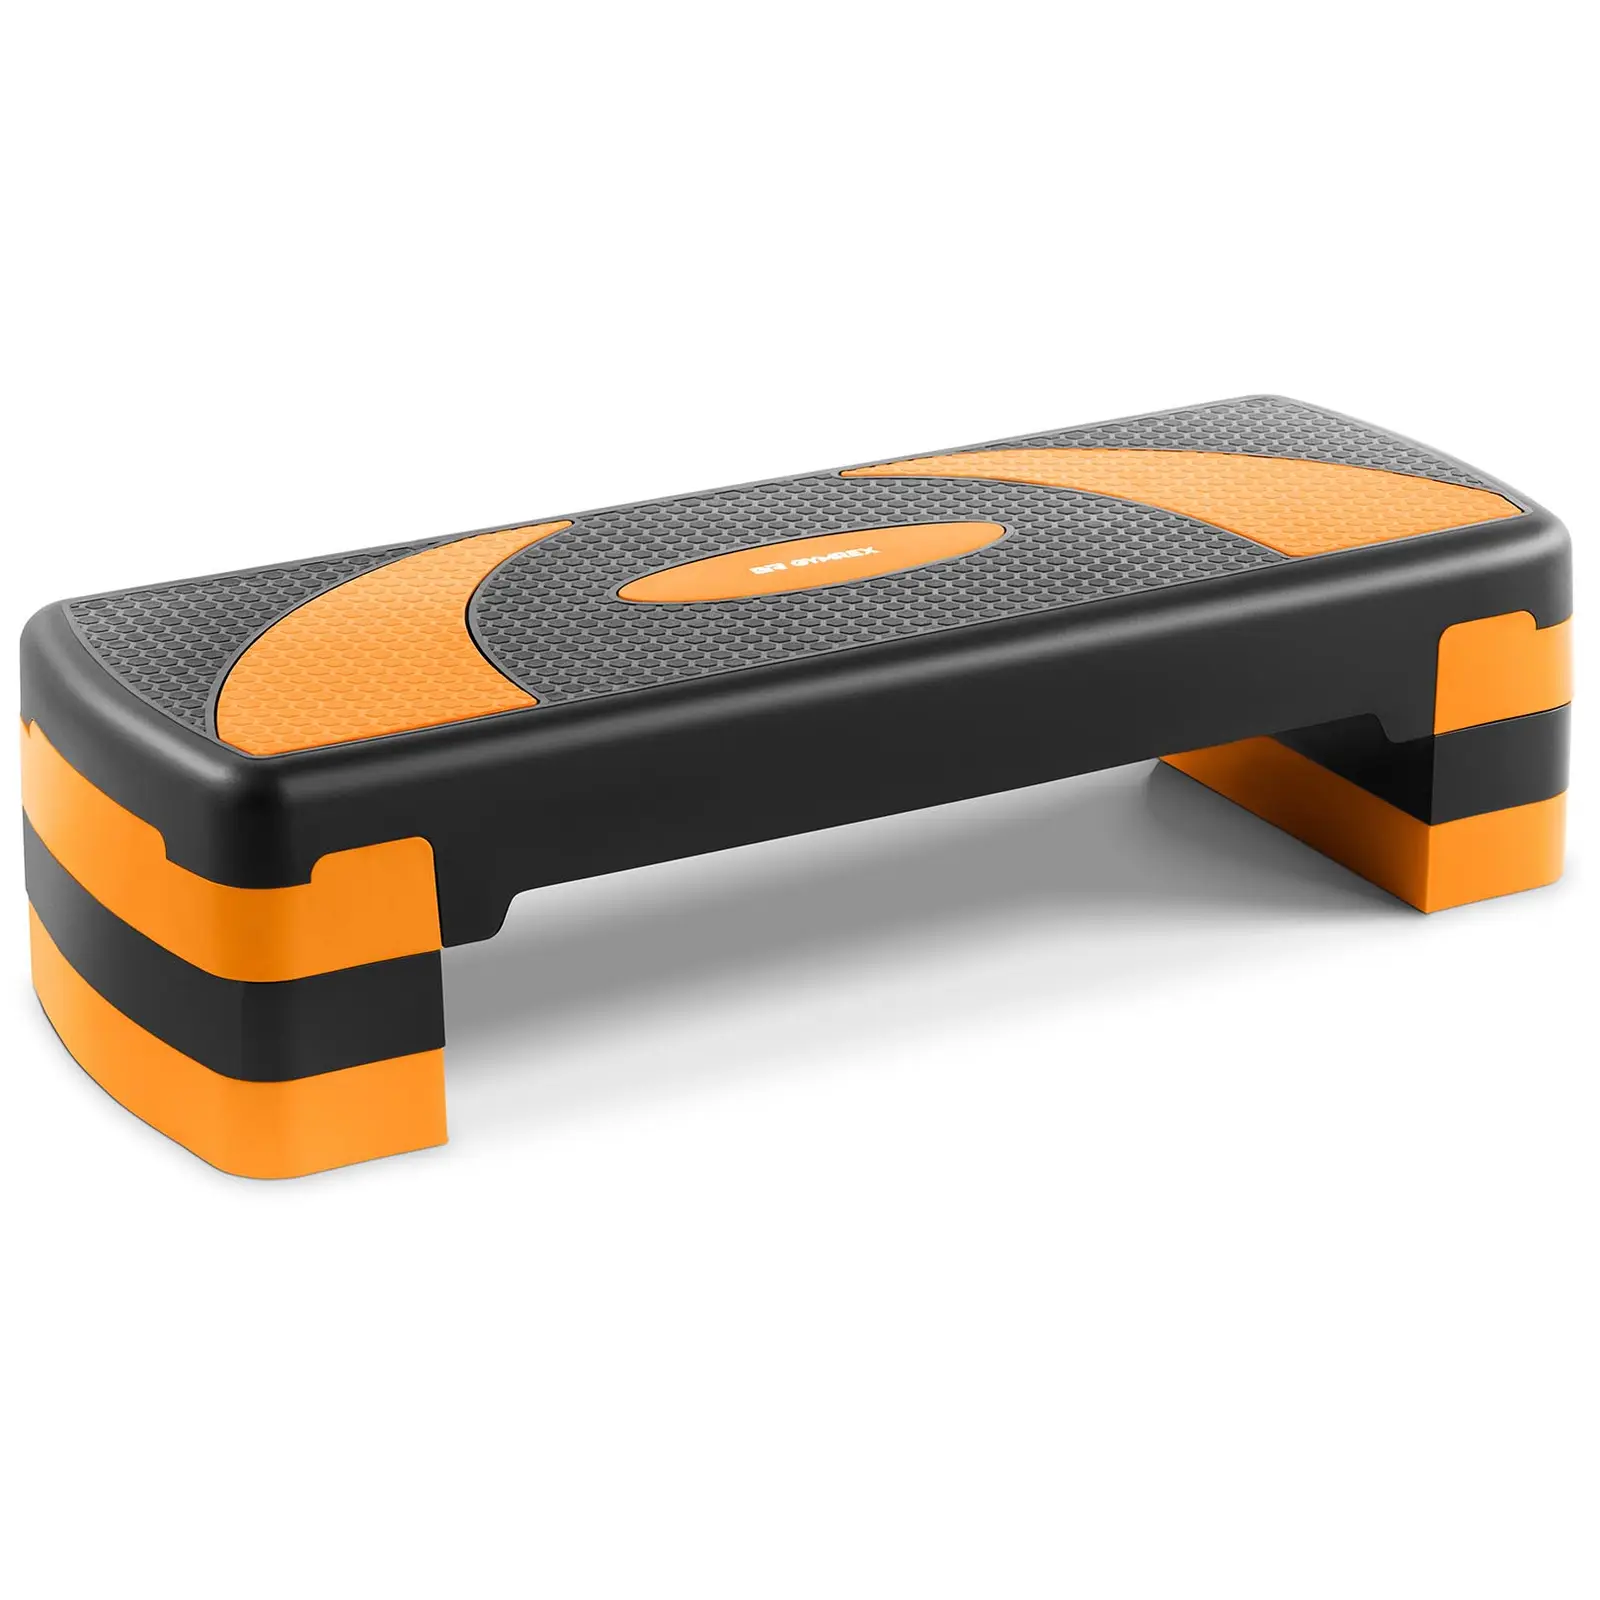 Steppbrett - höhenverstellbar - 100 kg - schwarz/orange